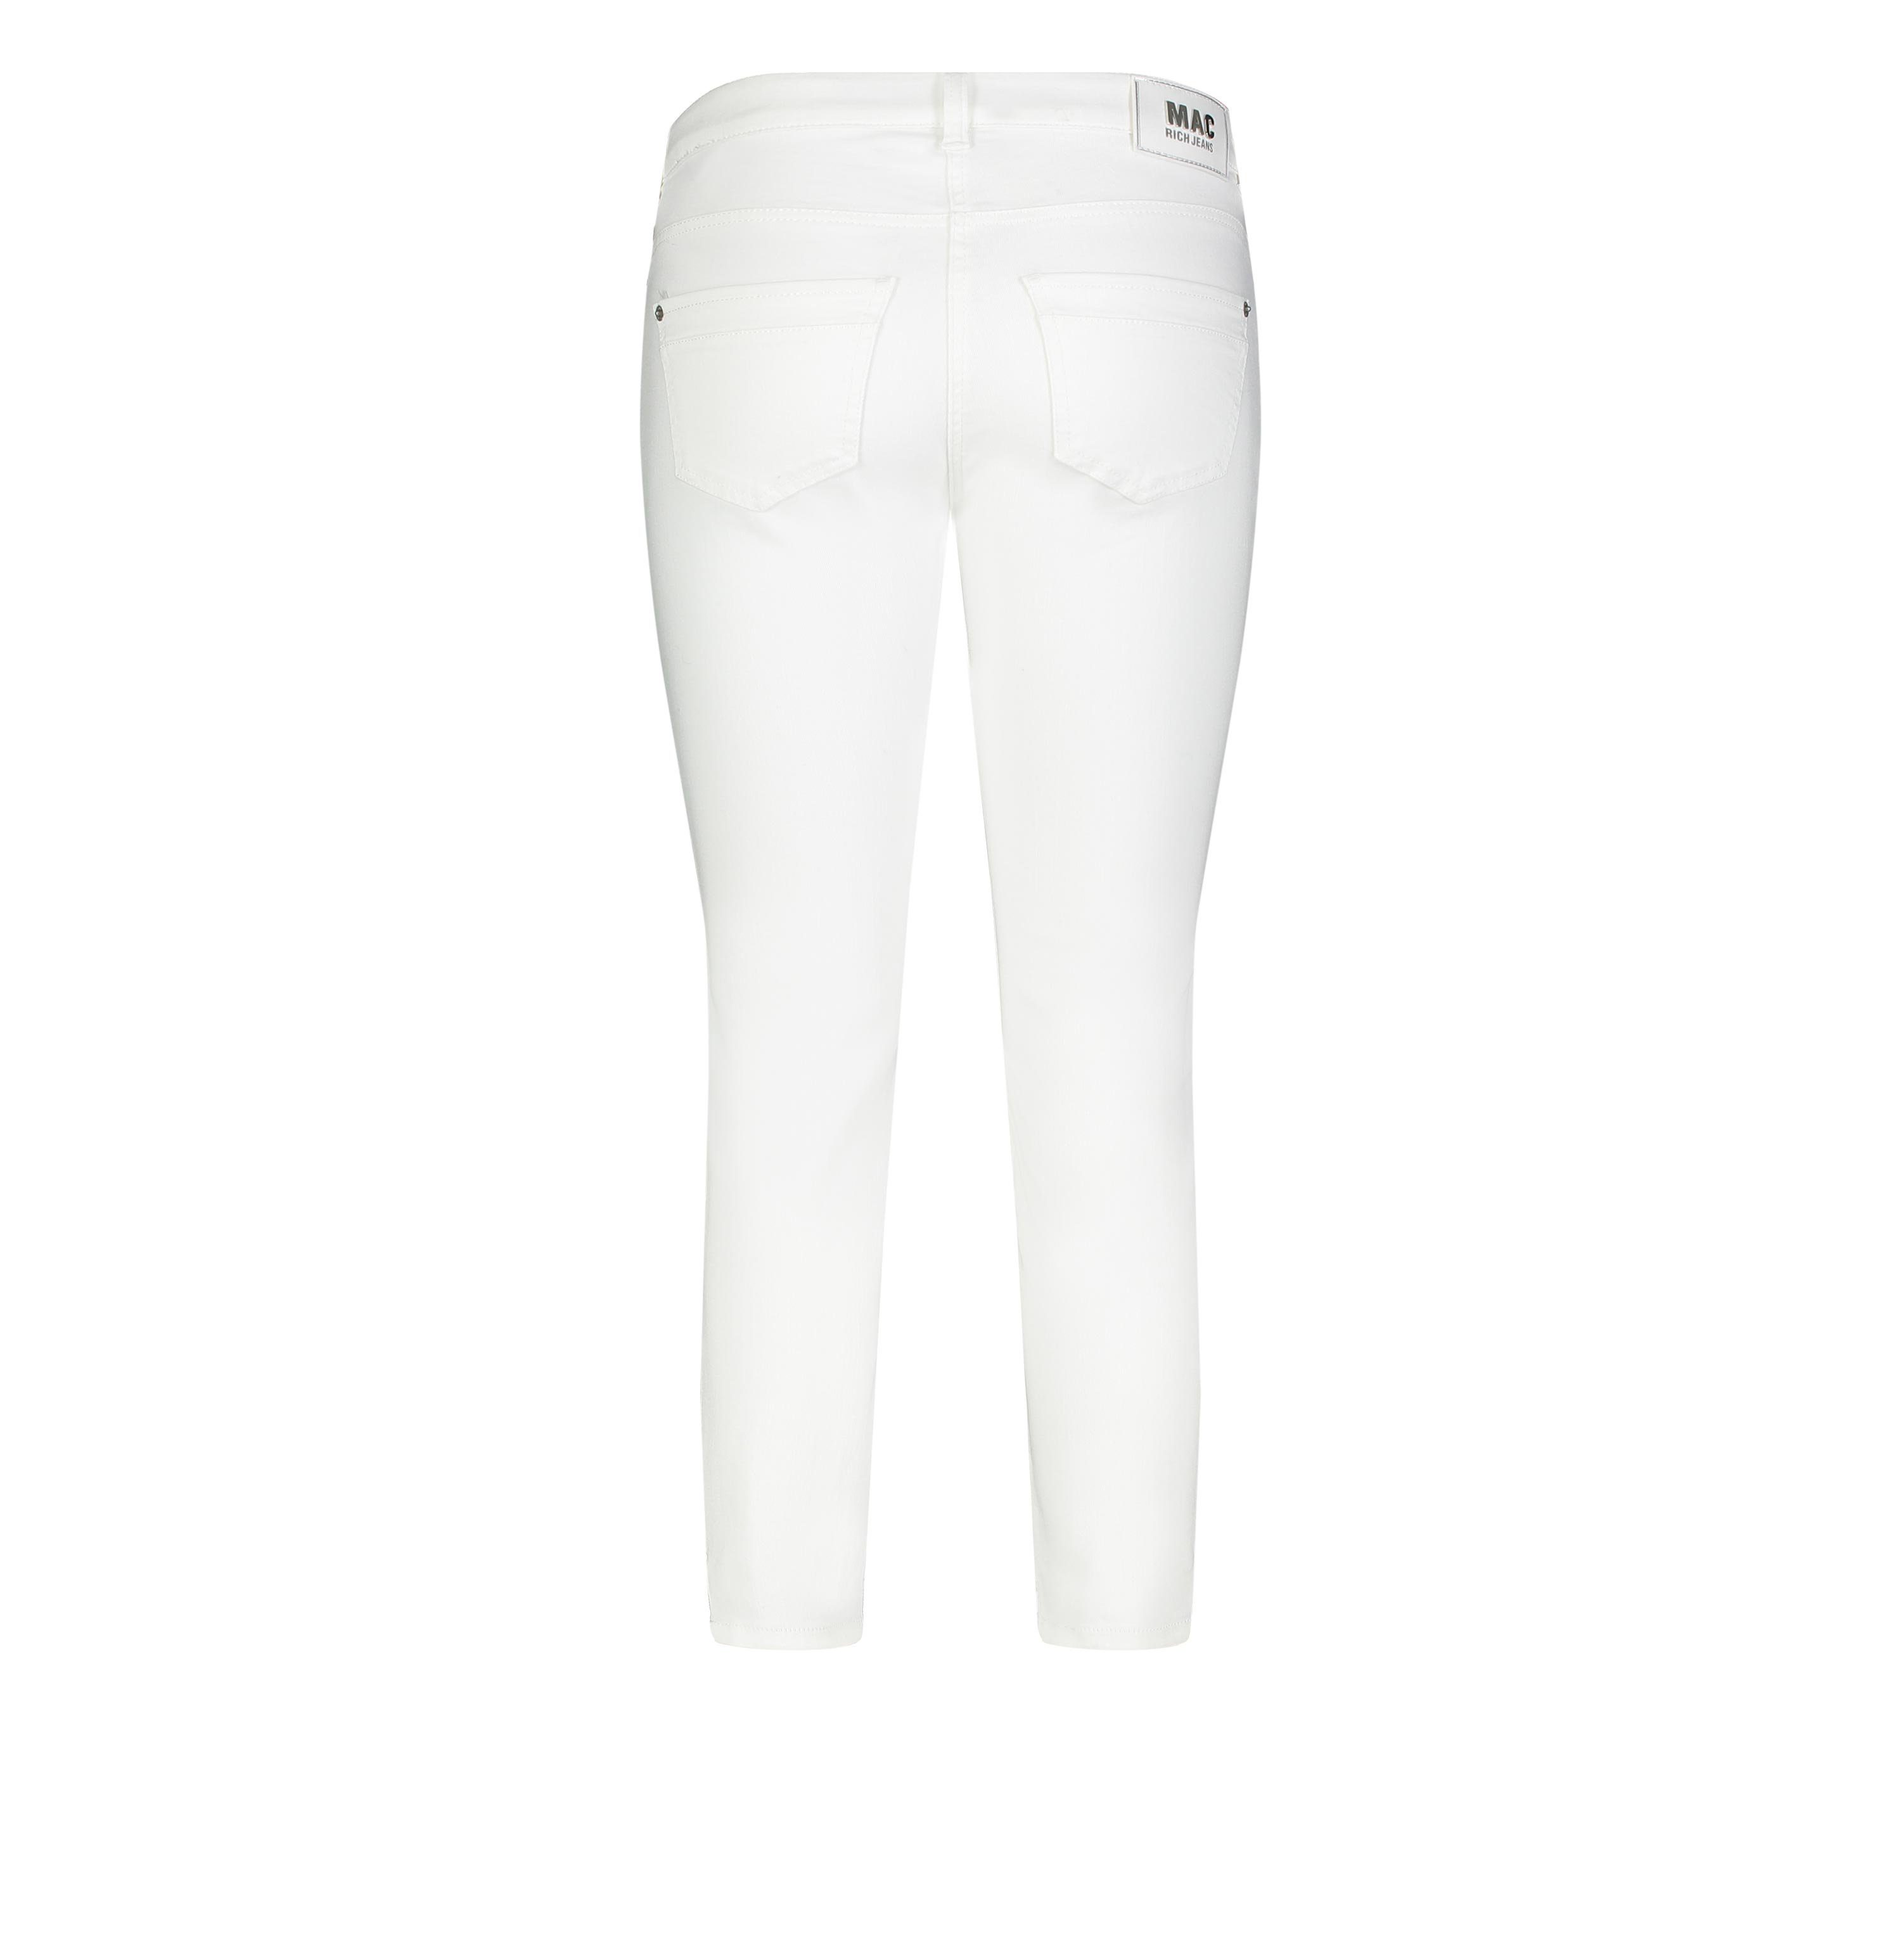 MAC Stretch-Jeans MAC RICH white 5755-90-0389L D010 SLIM denim